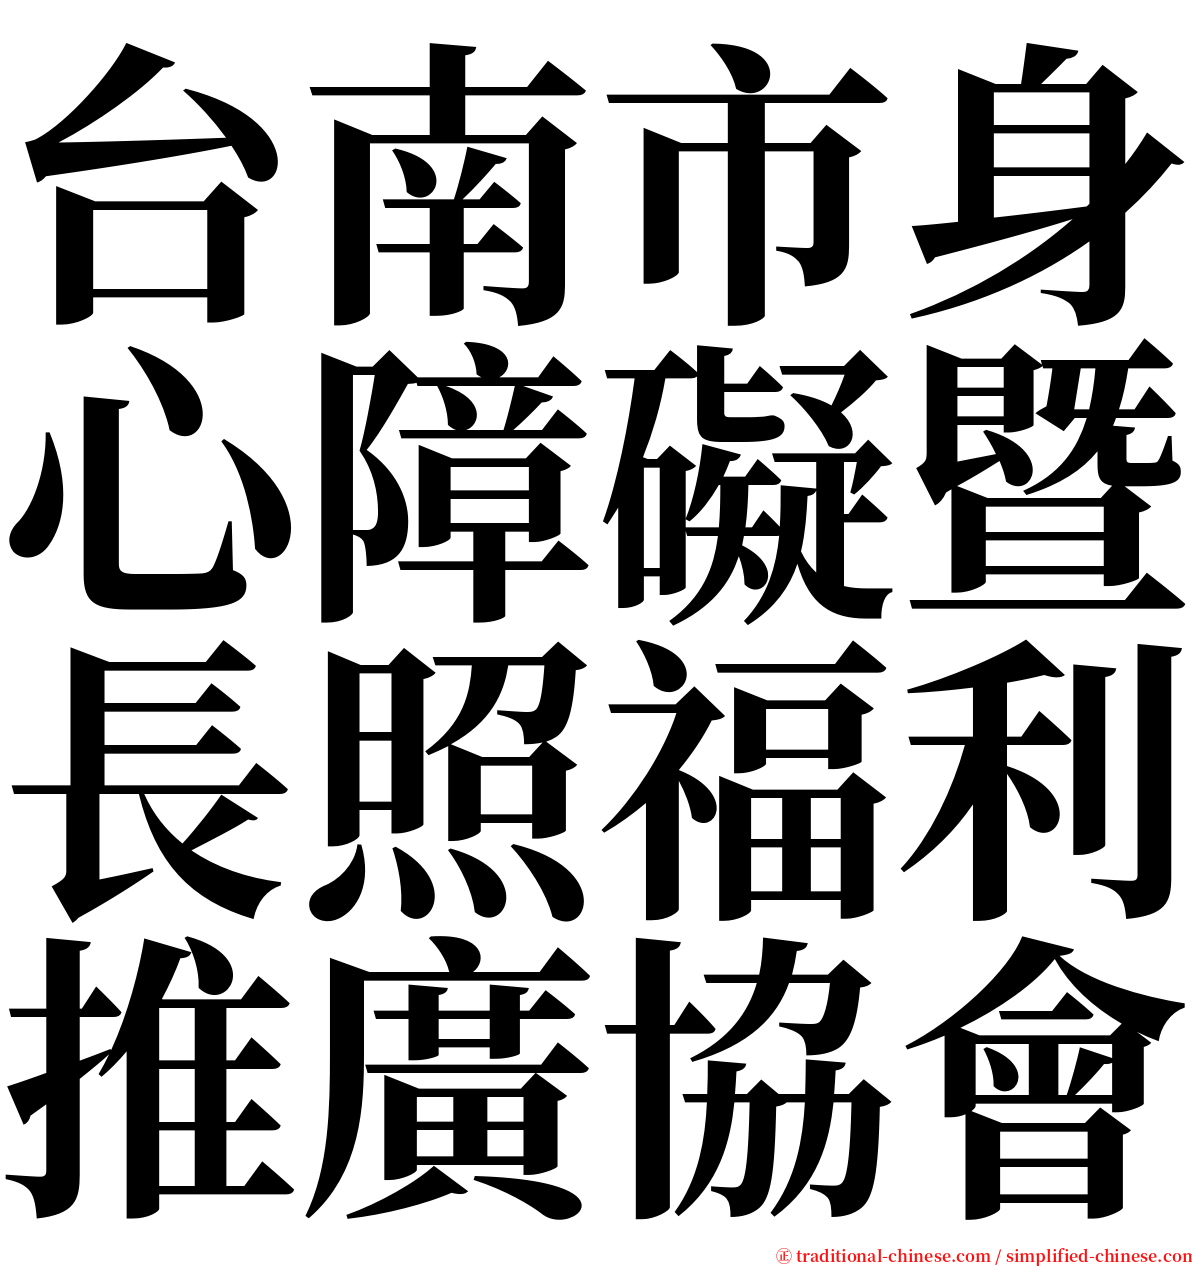 台南市身心障礙暨長照福利推廣協會 serif font